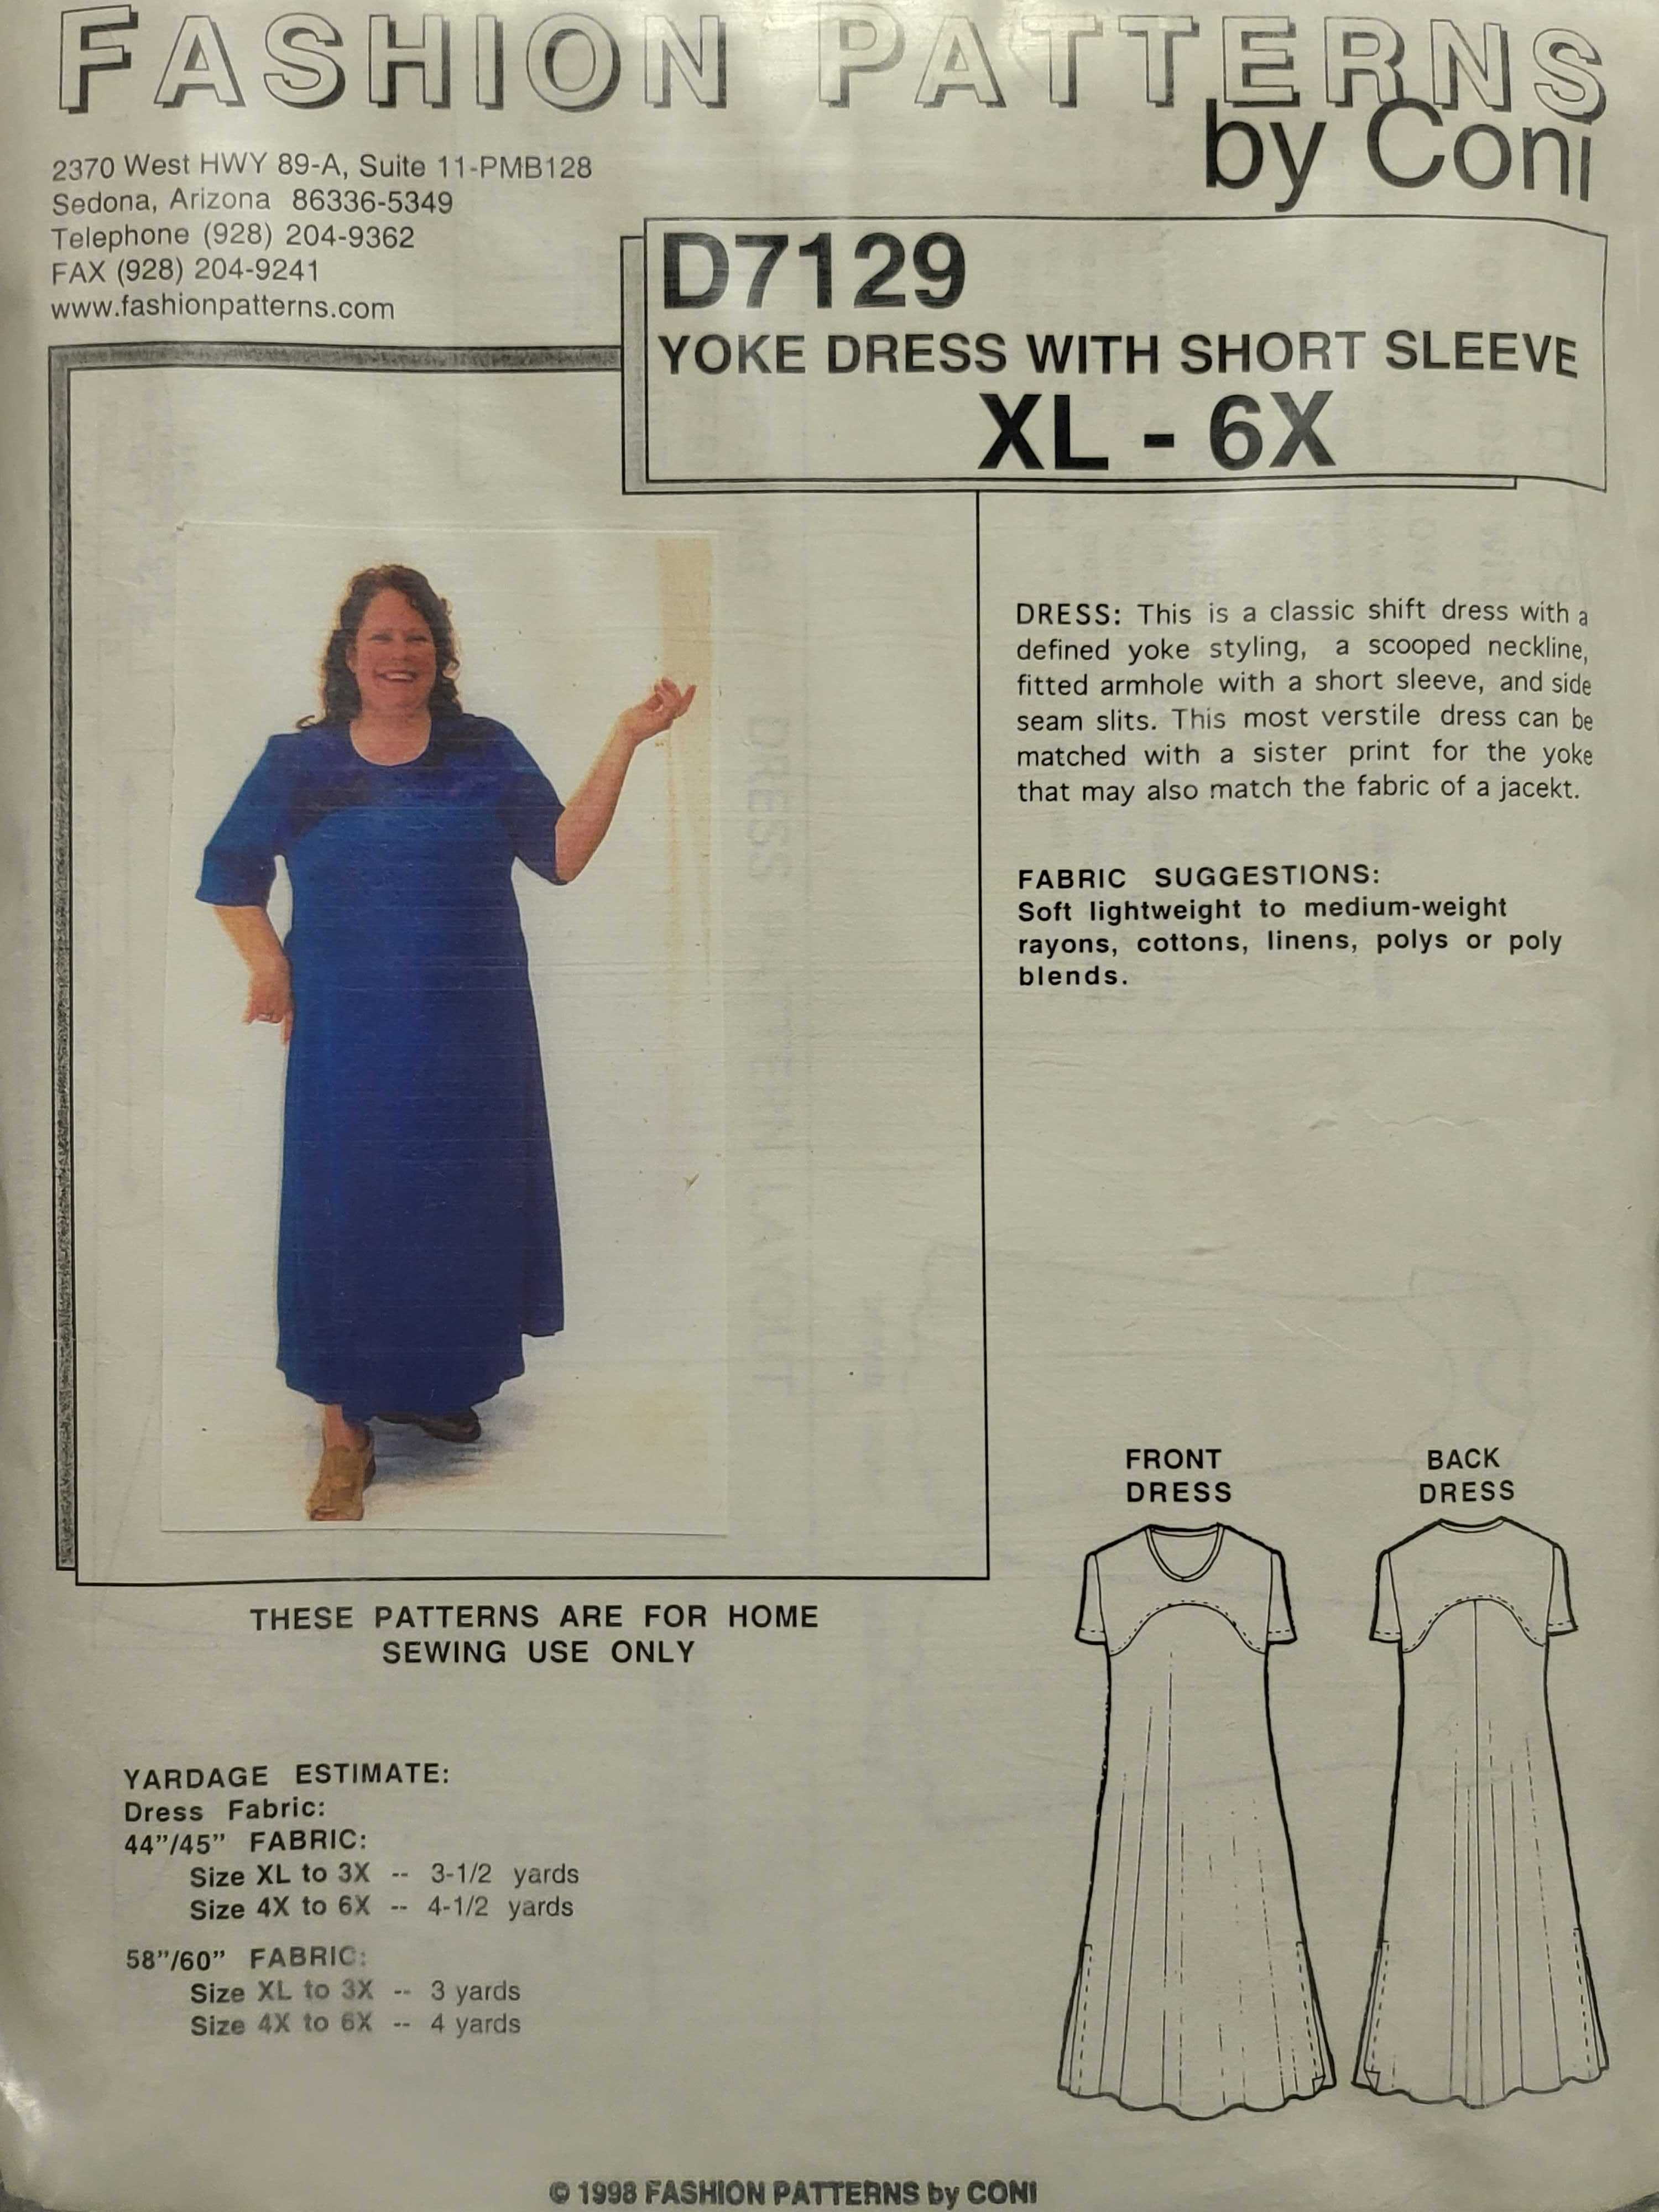 The Yoke Dress Pattern by Ellen McCarn